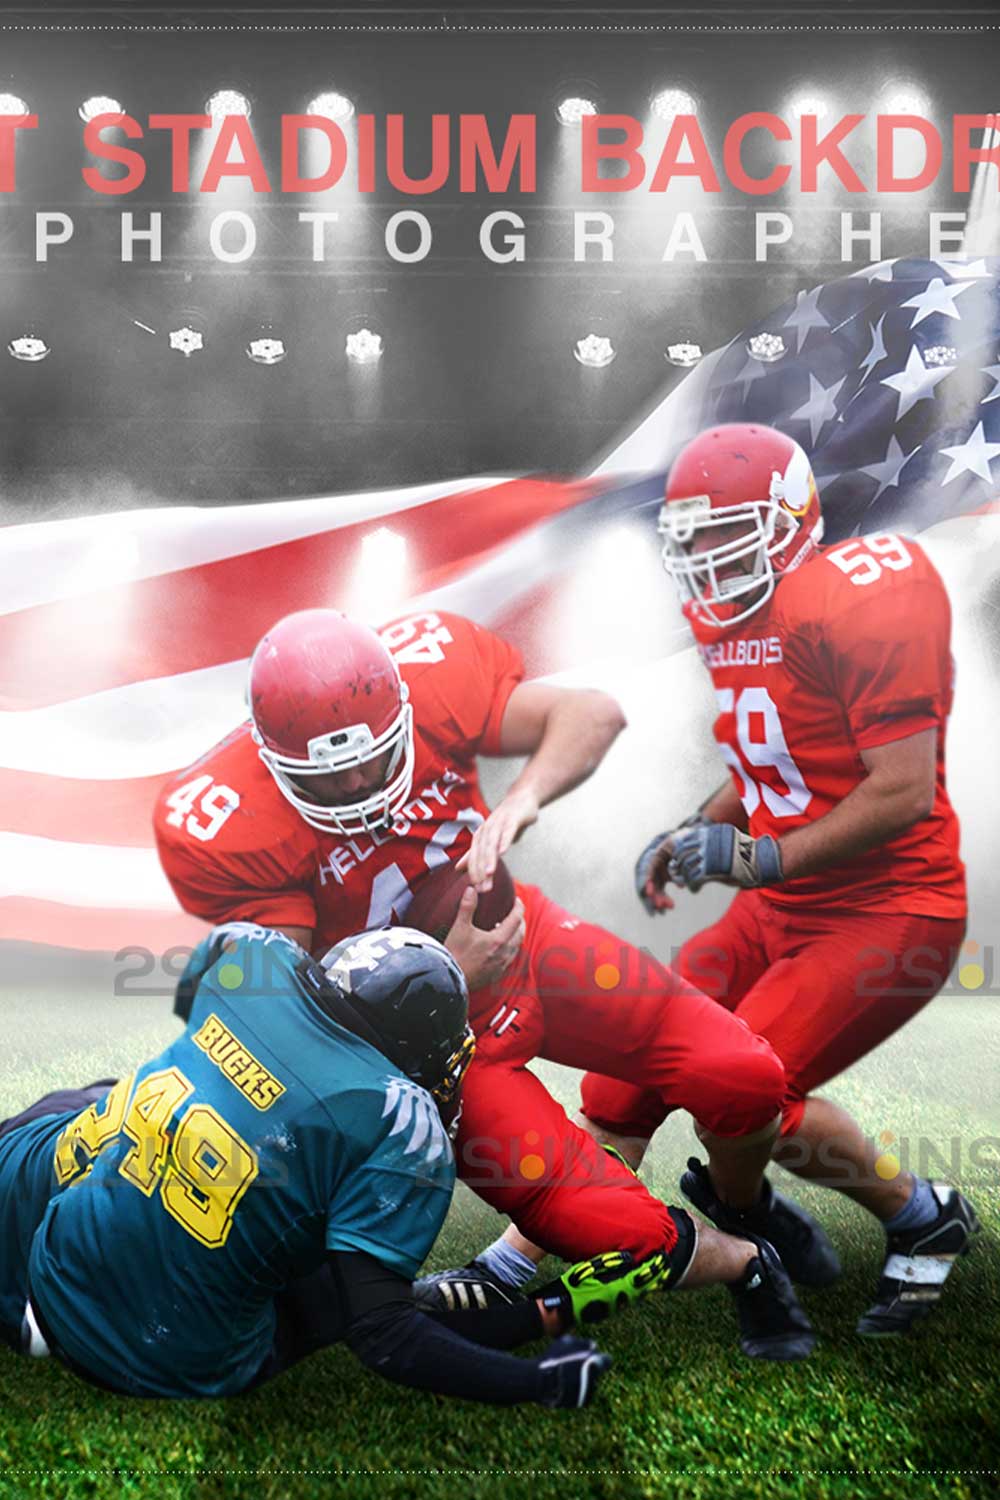 Stylish Football Backdrop Sports Digital Photoshop Overlay Pinterest Image.